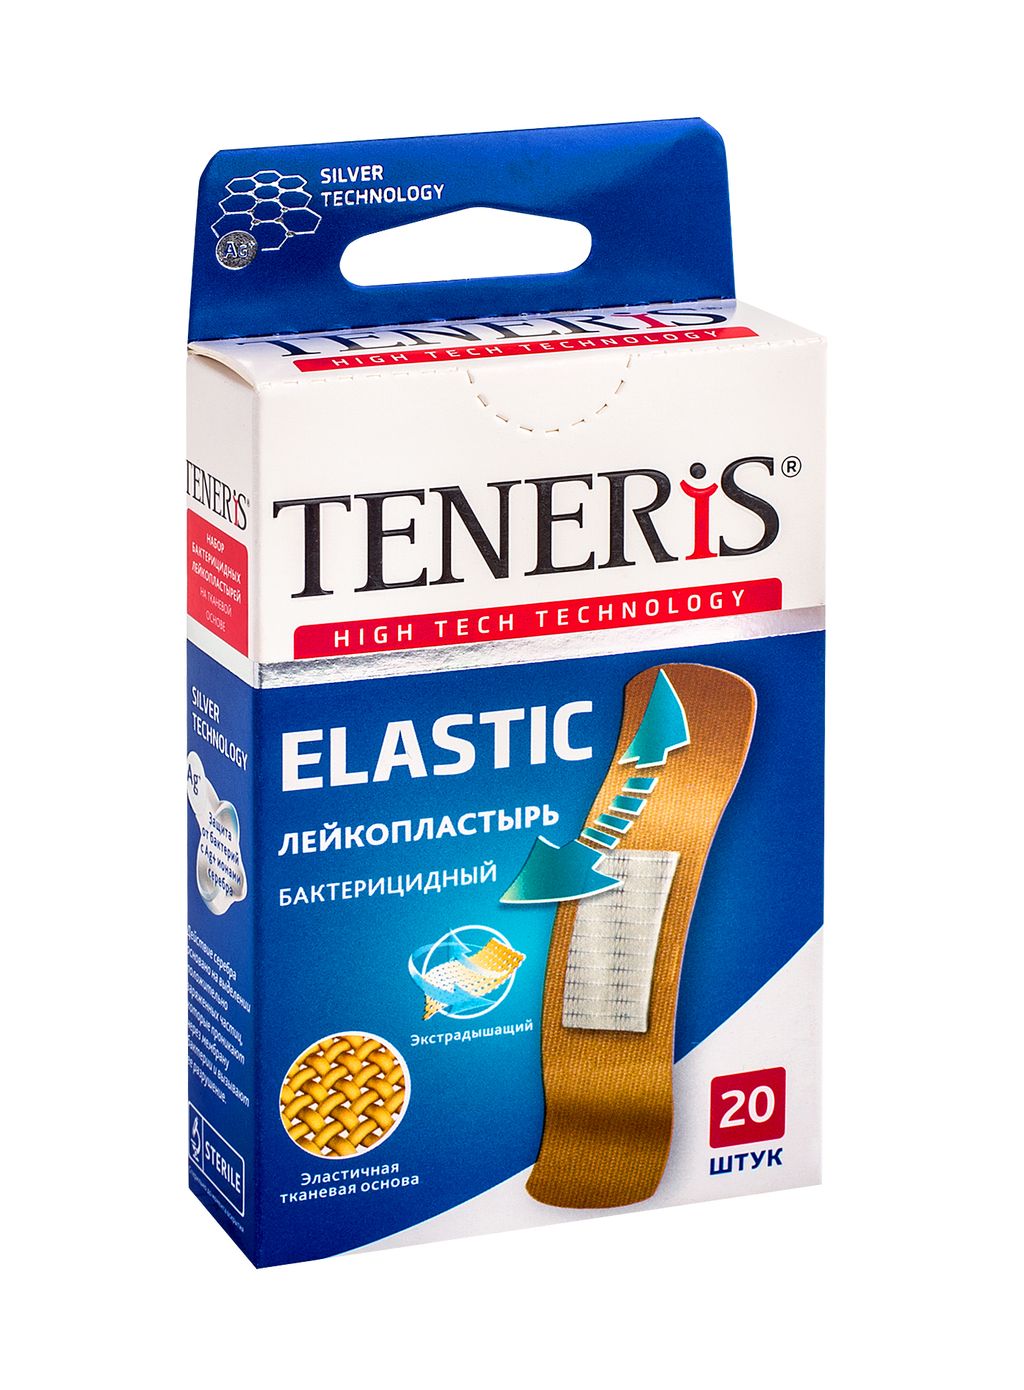 фото упаковки Teneris Elastic лейкопластырь бактерицидный